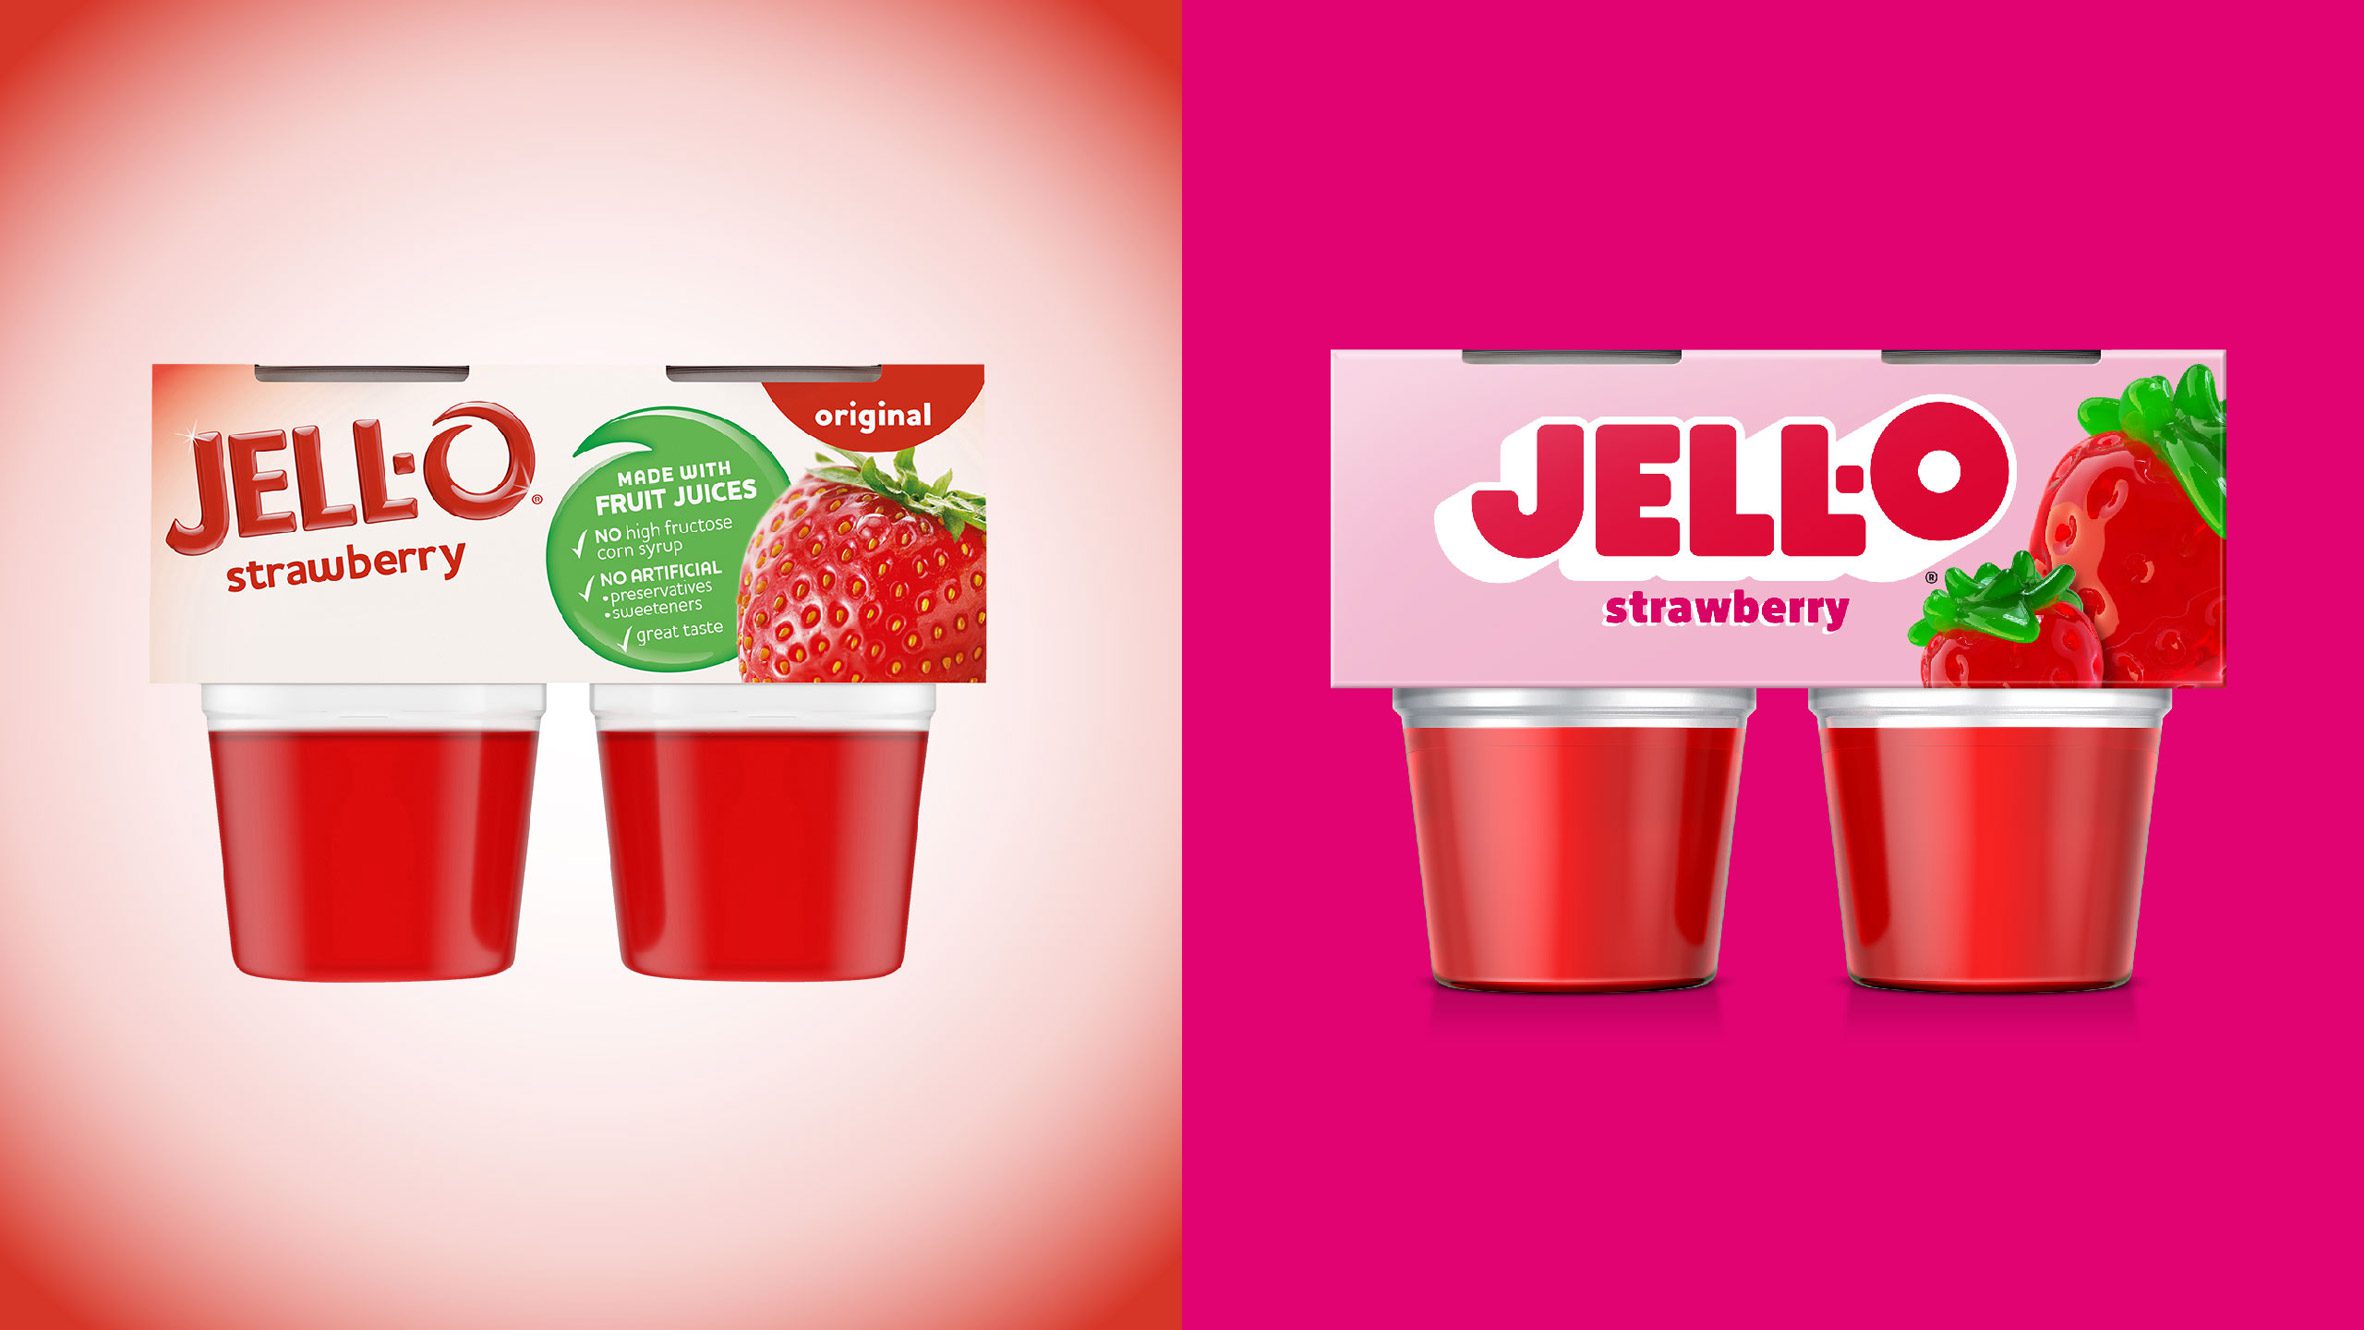 Kraft Heinz Jell-O rebrand by BrandOpus